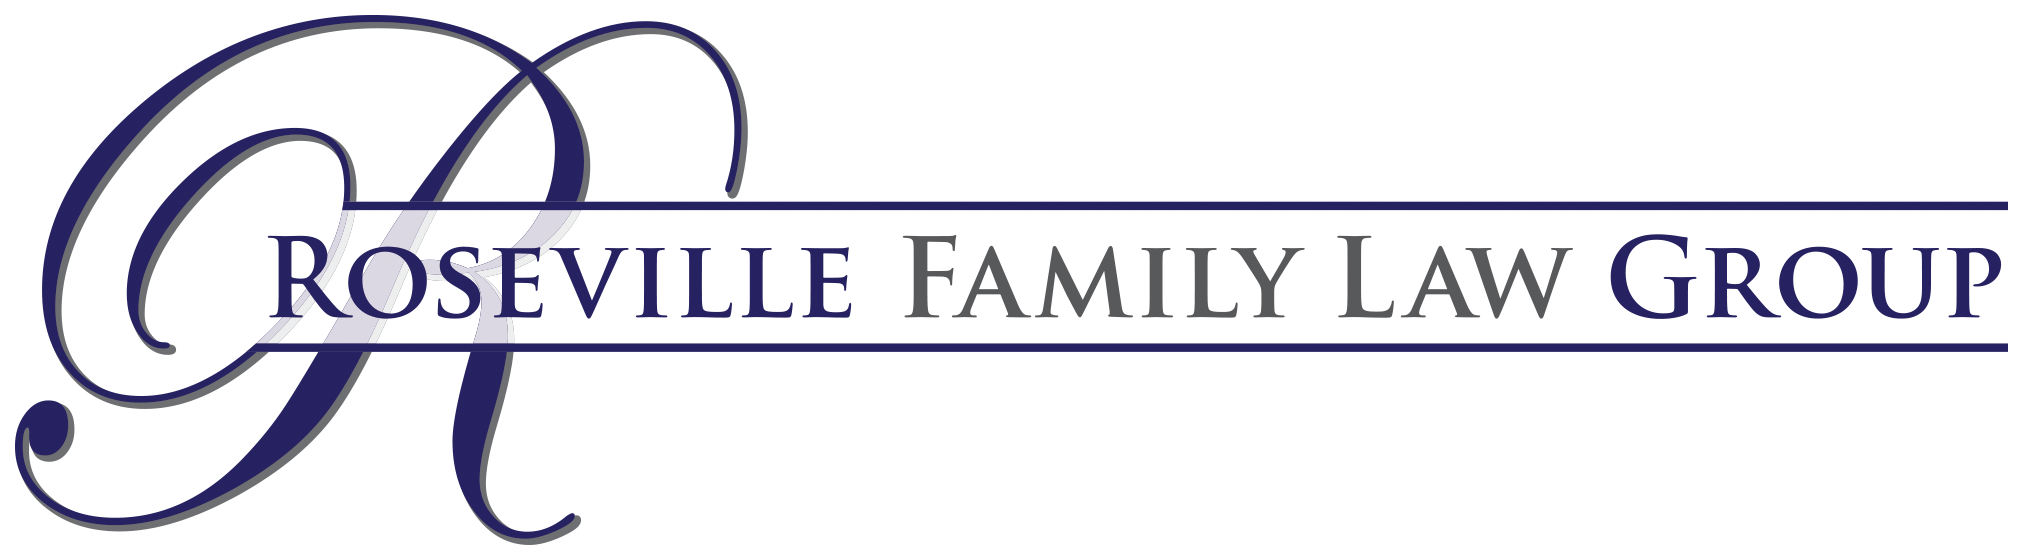 Roseville Family Law Group